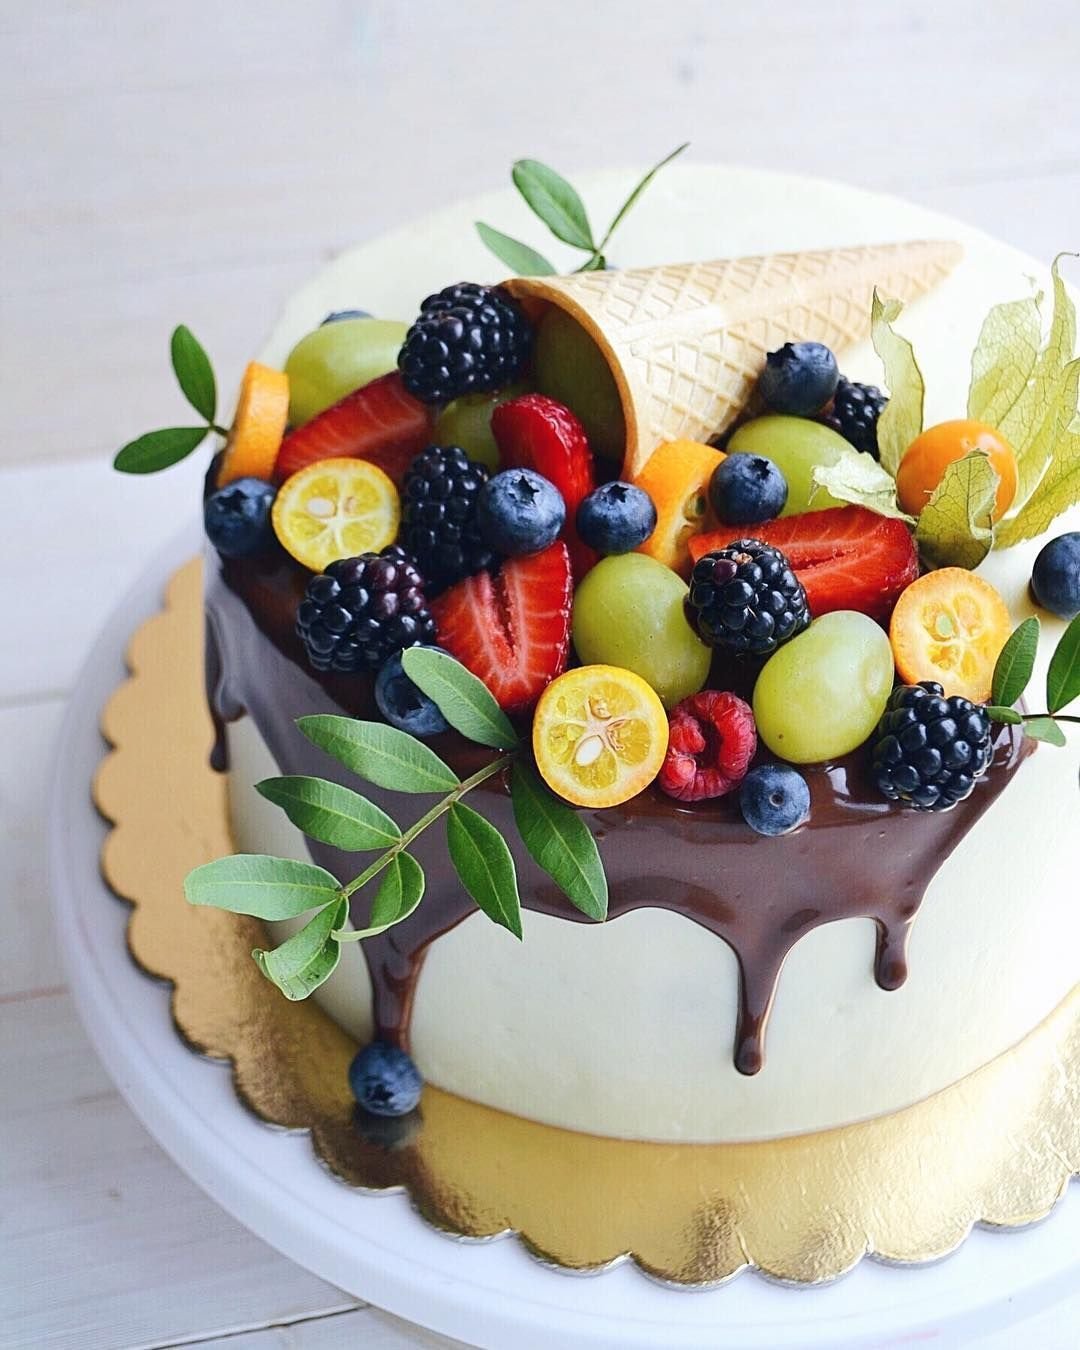 Как украсить торт фруктами: красивые идеи декора (+бонус-видео)